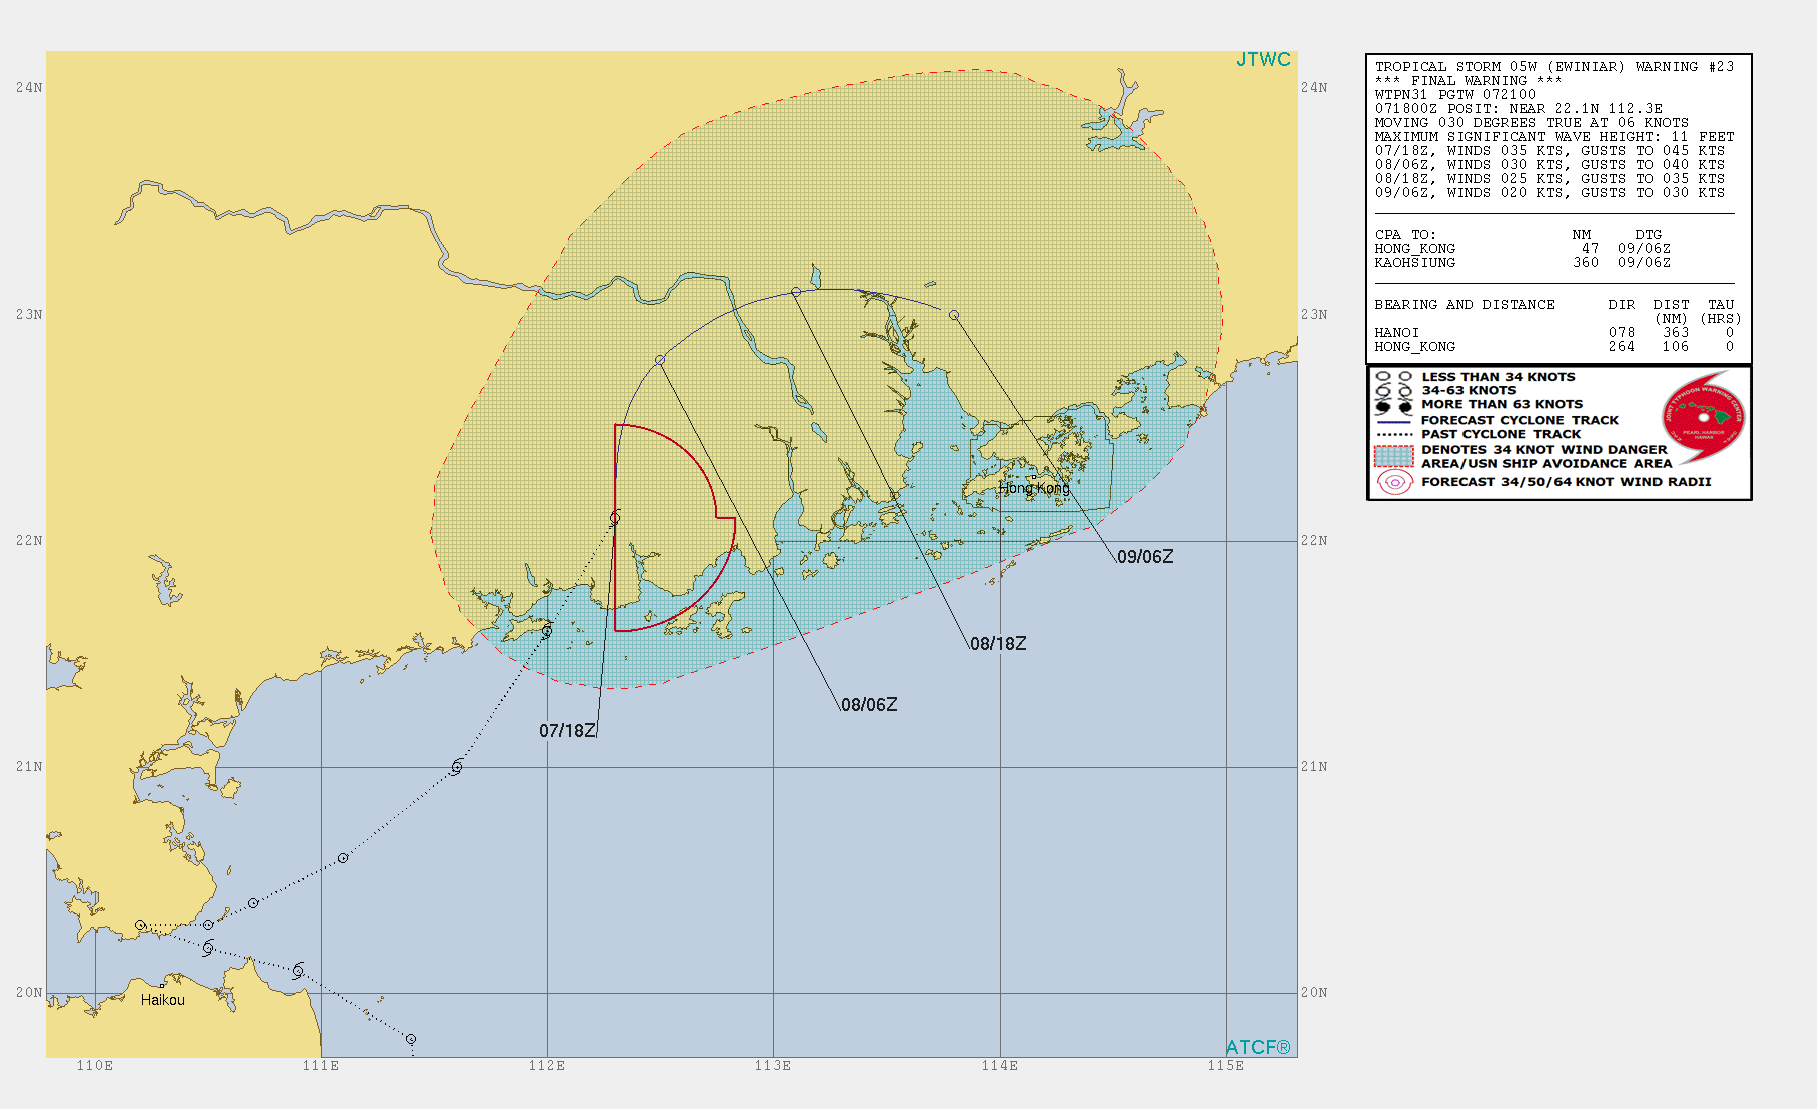 JTWC 05W forecast